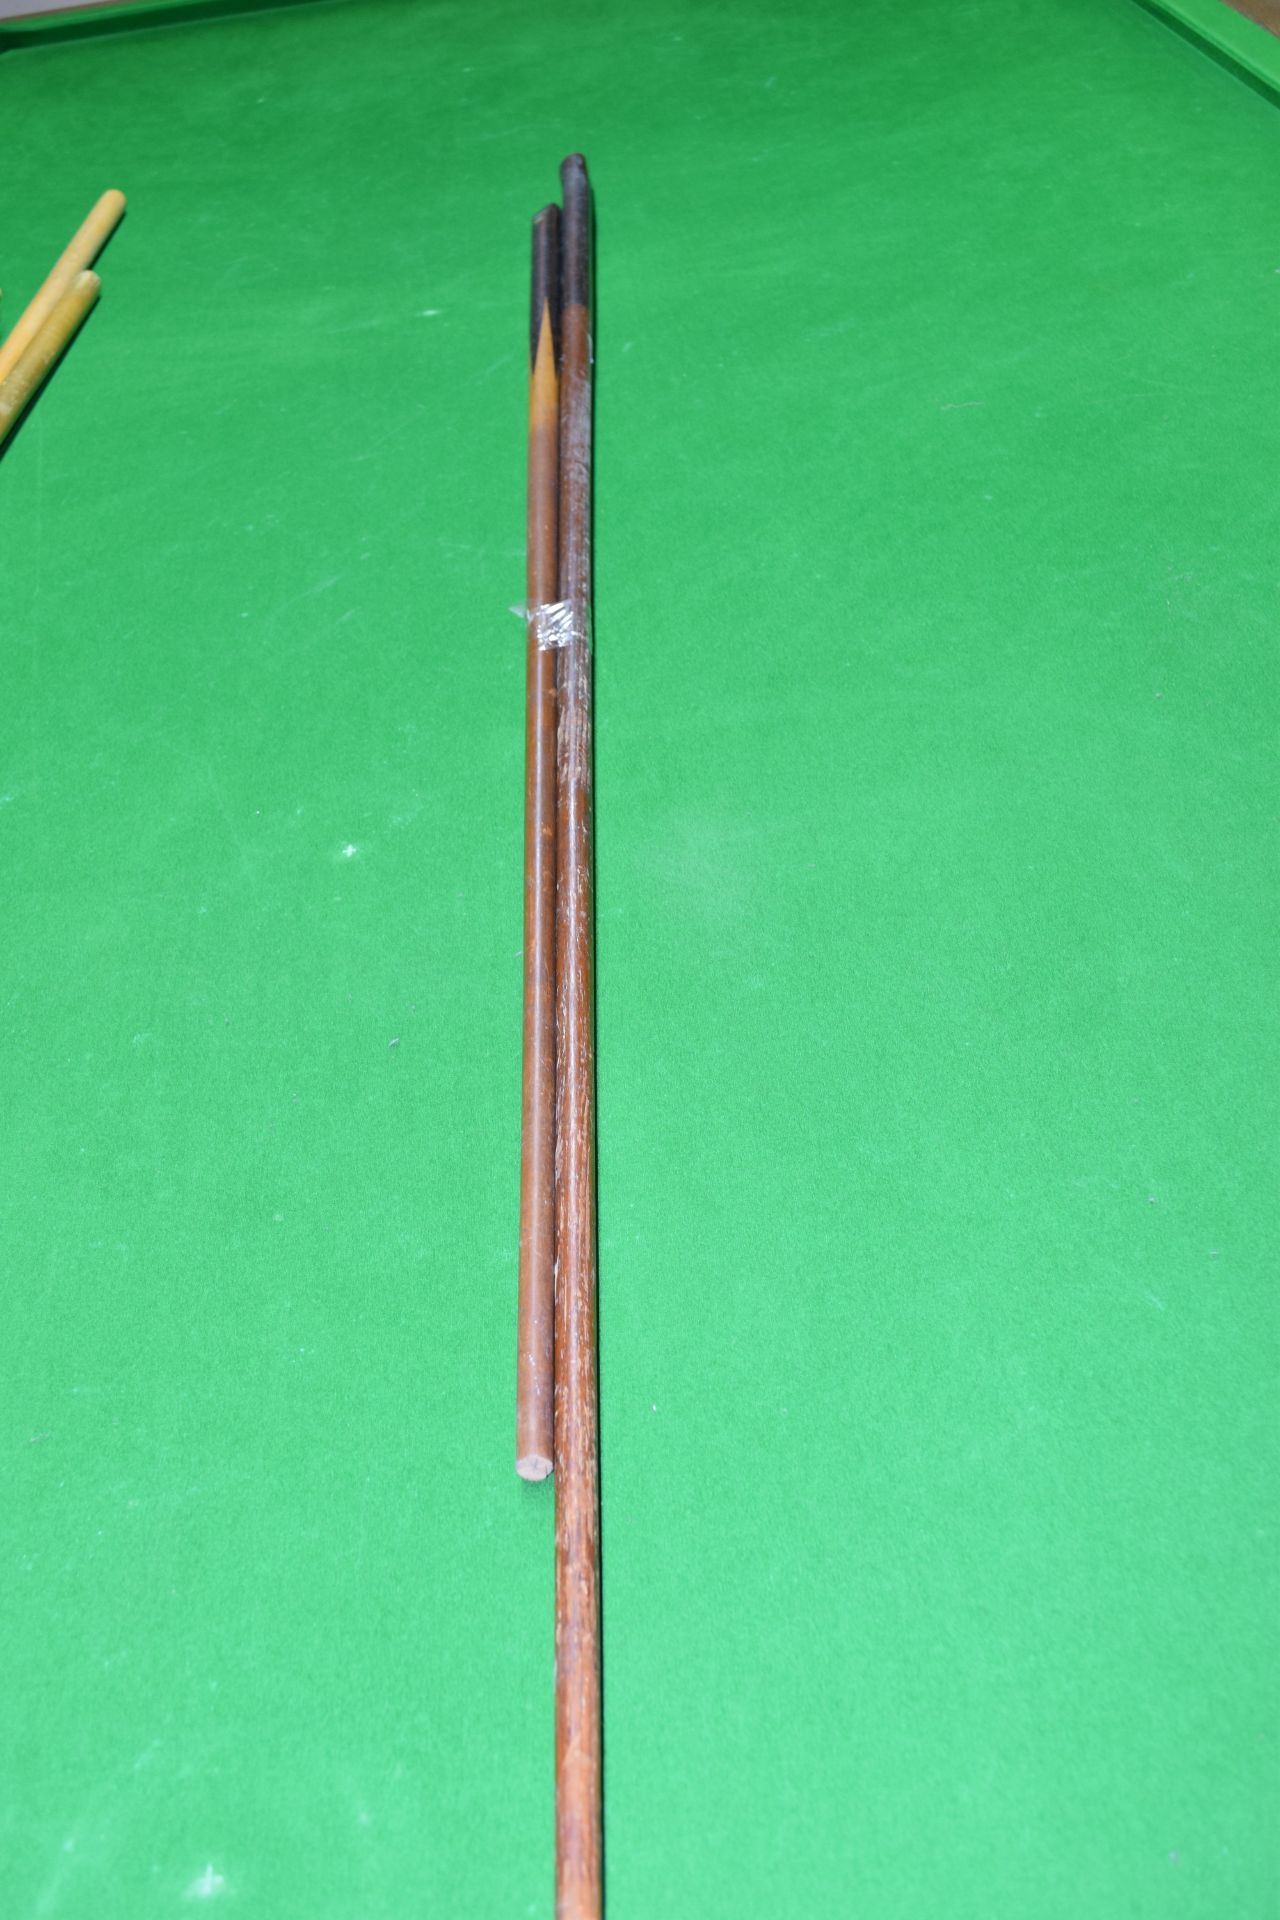 Two vintage snooker cues